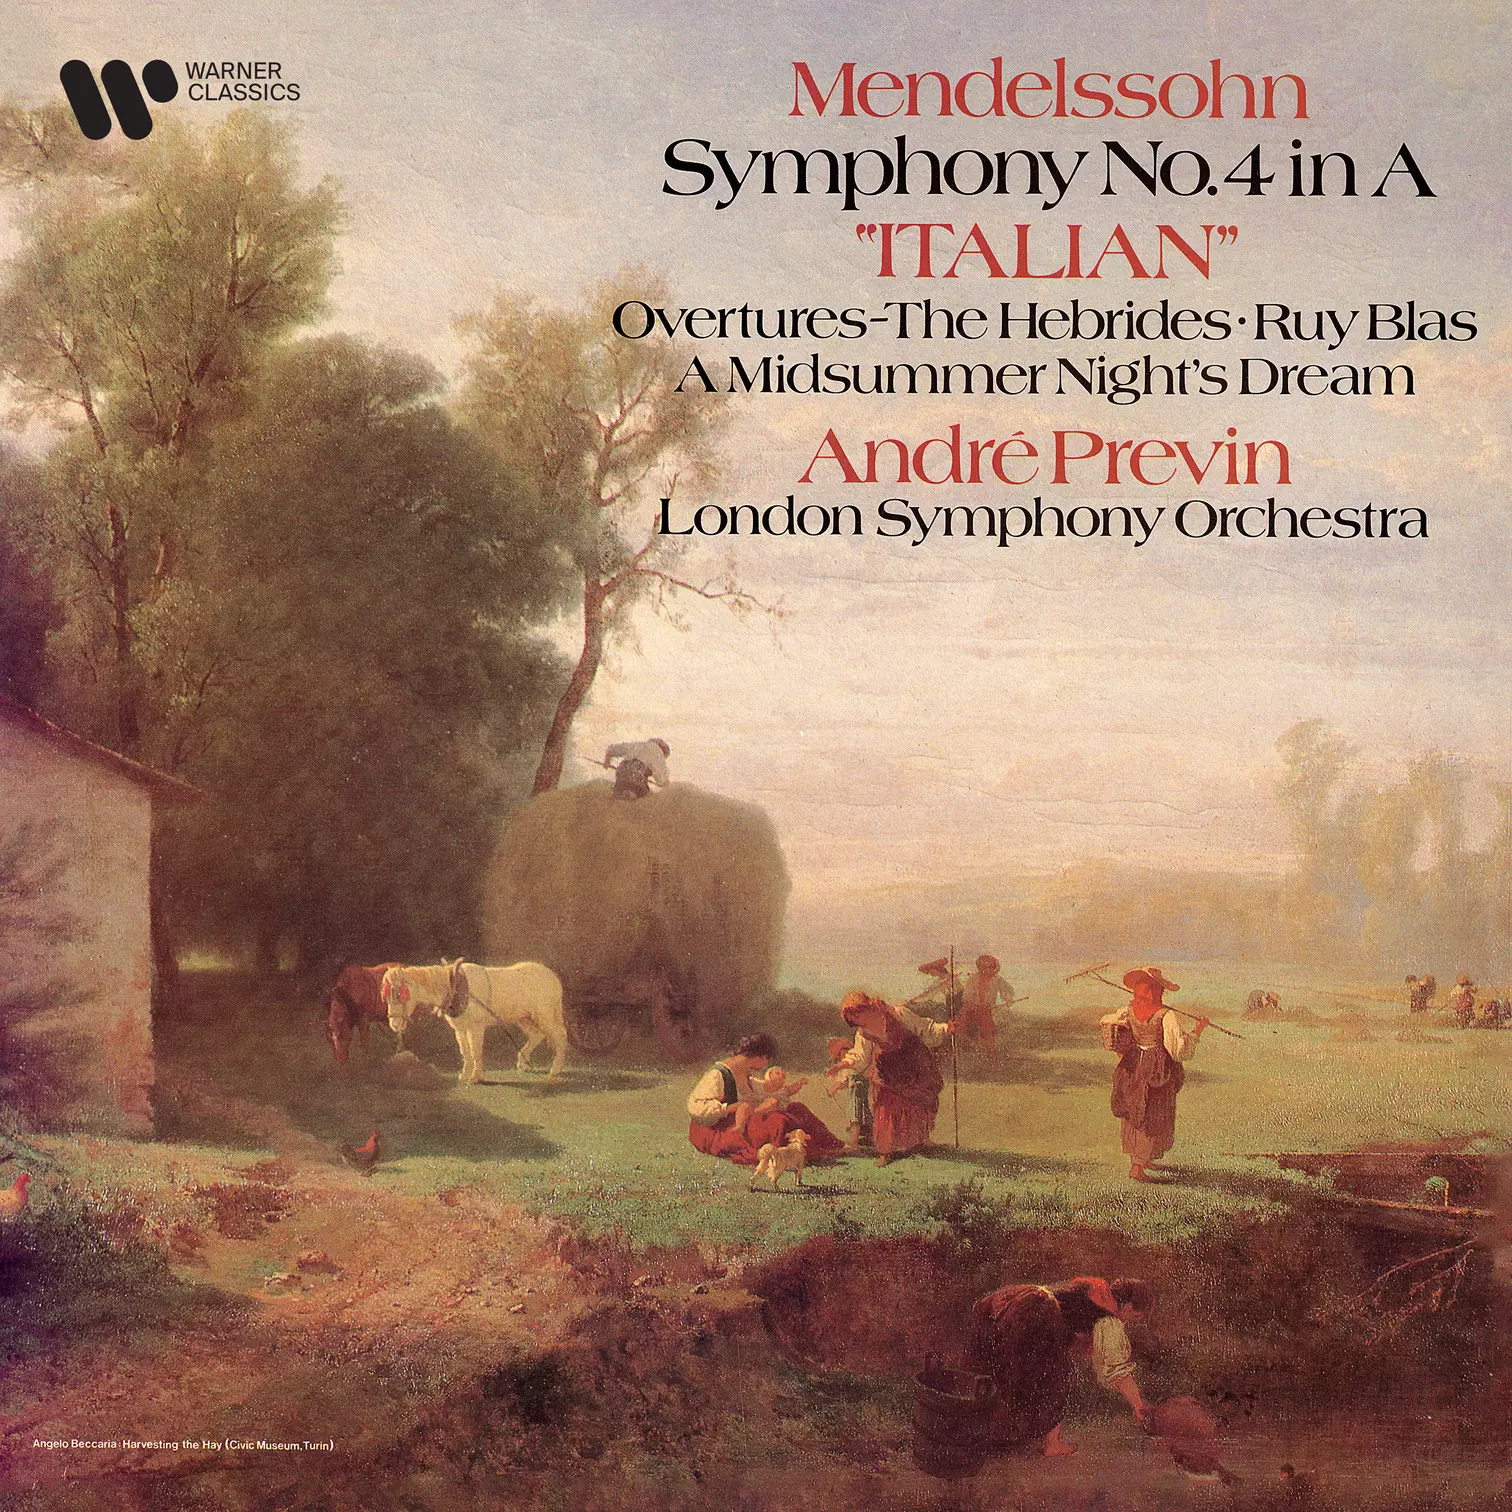 Mendelssohn: Symphony No. 4 “Italian”, The Hebrides, Ruy Blas & Overture from A Midsummer Night’s Dream